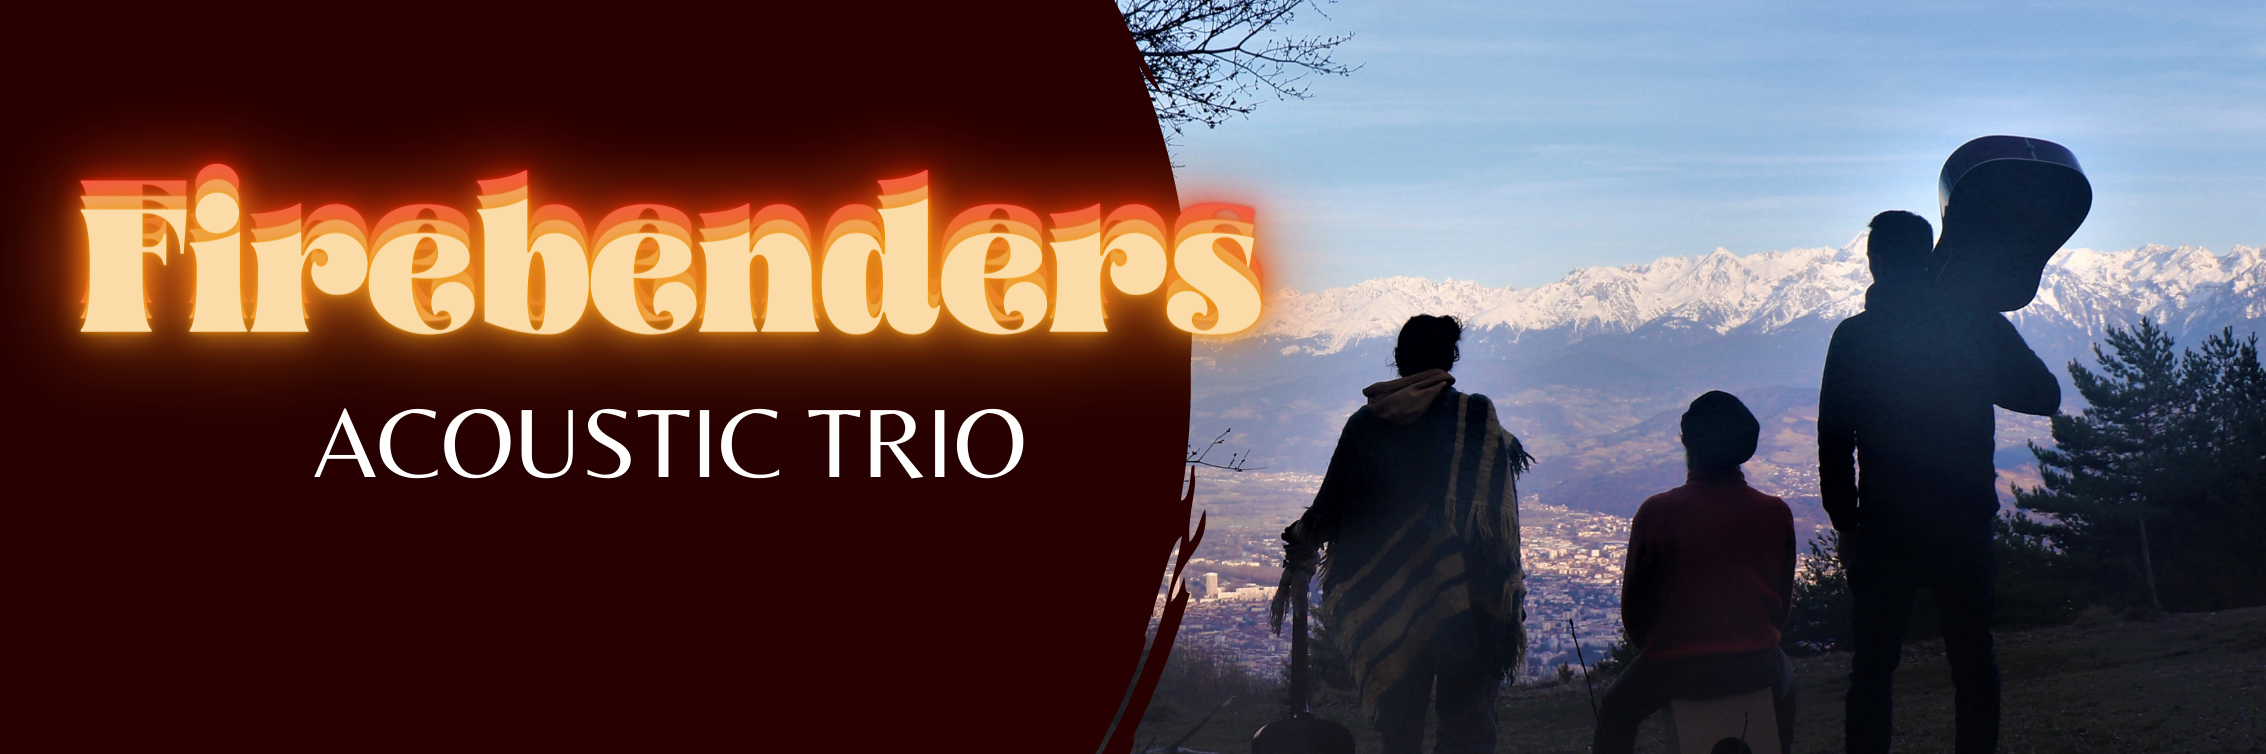 Firebenders Acoustic Trio, groupe de musique Pop en représentation à Rhône - photo de couverture